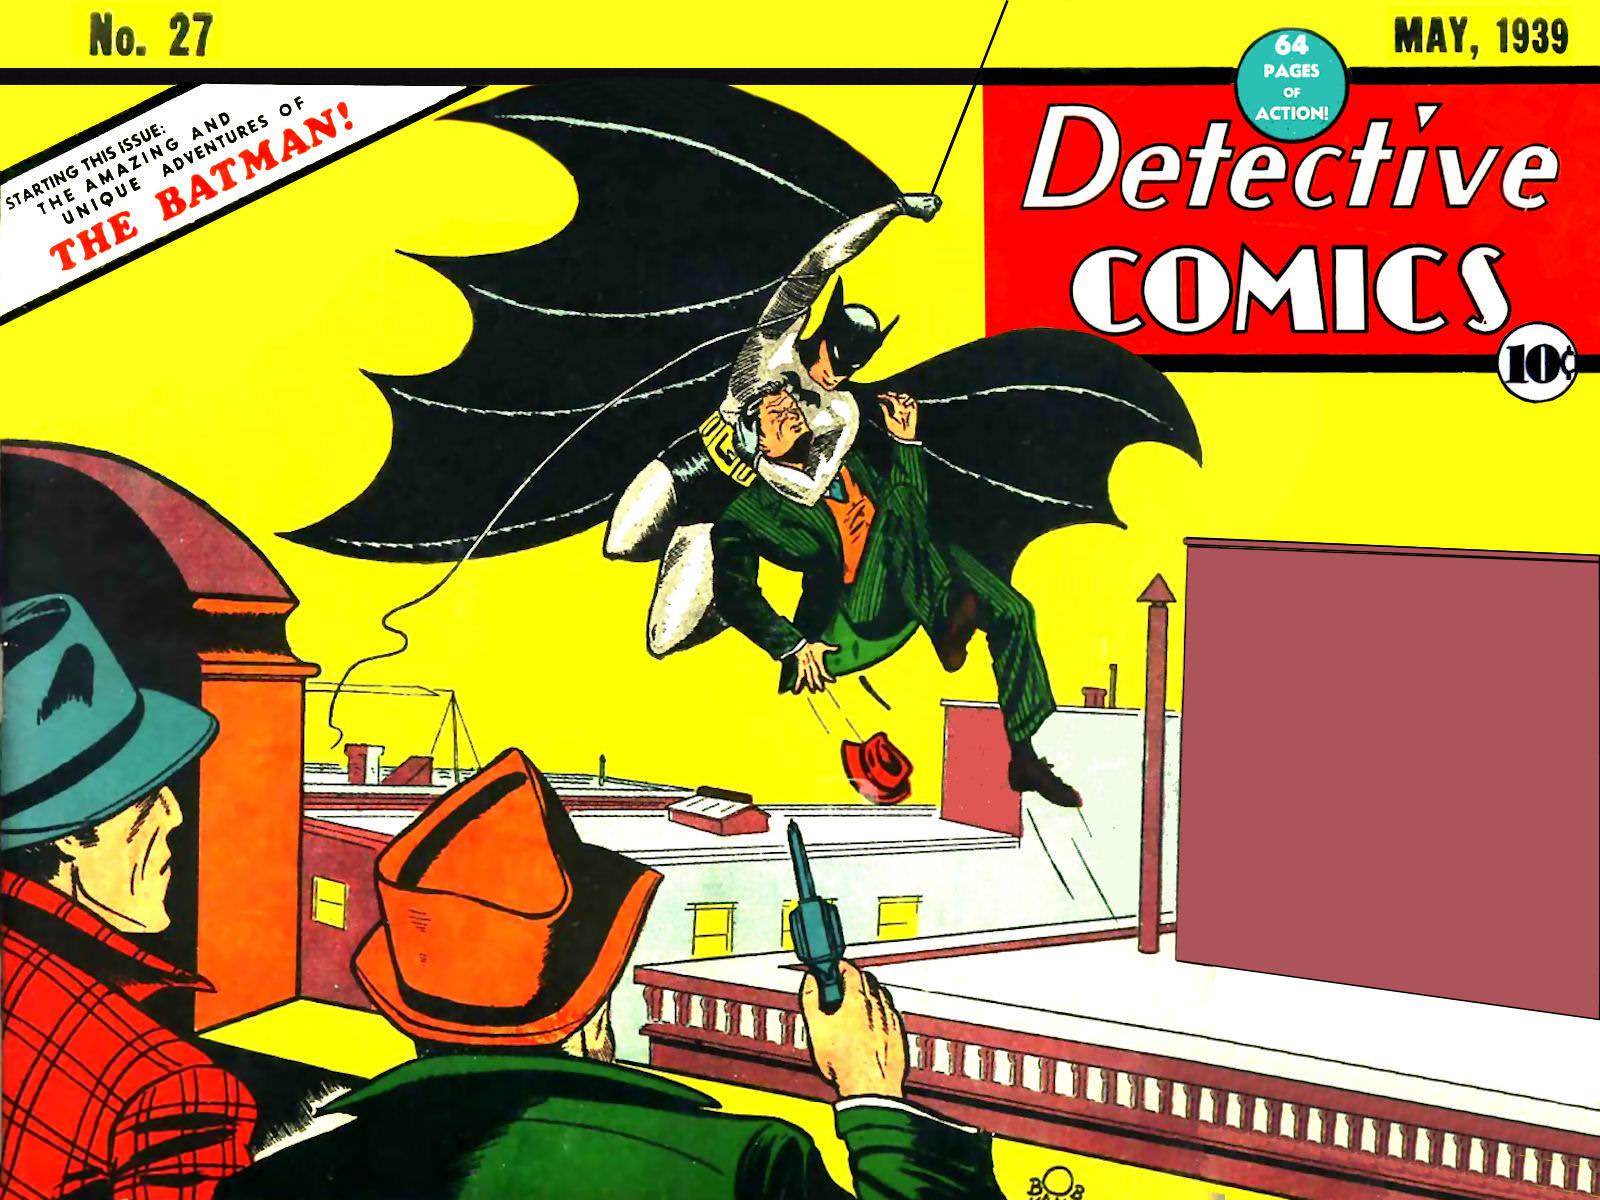 Batman in 1939 - BOF's Batman Timeline - BATMAN ON FILM